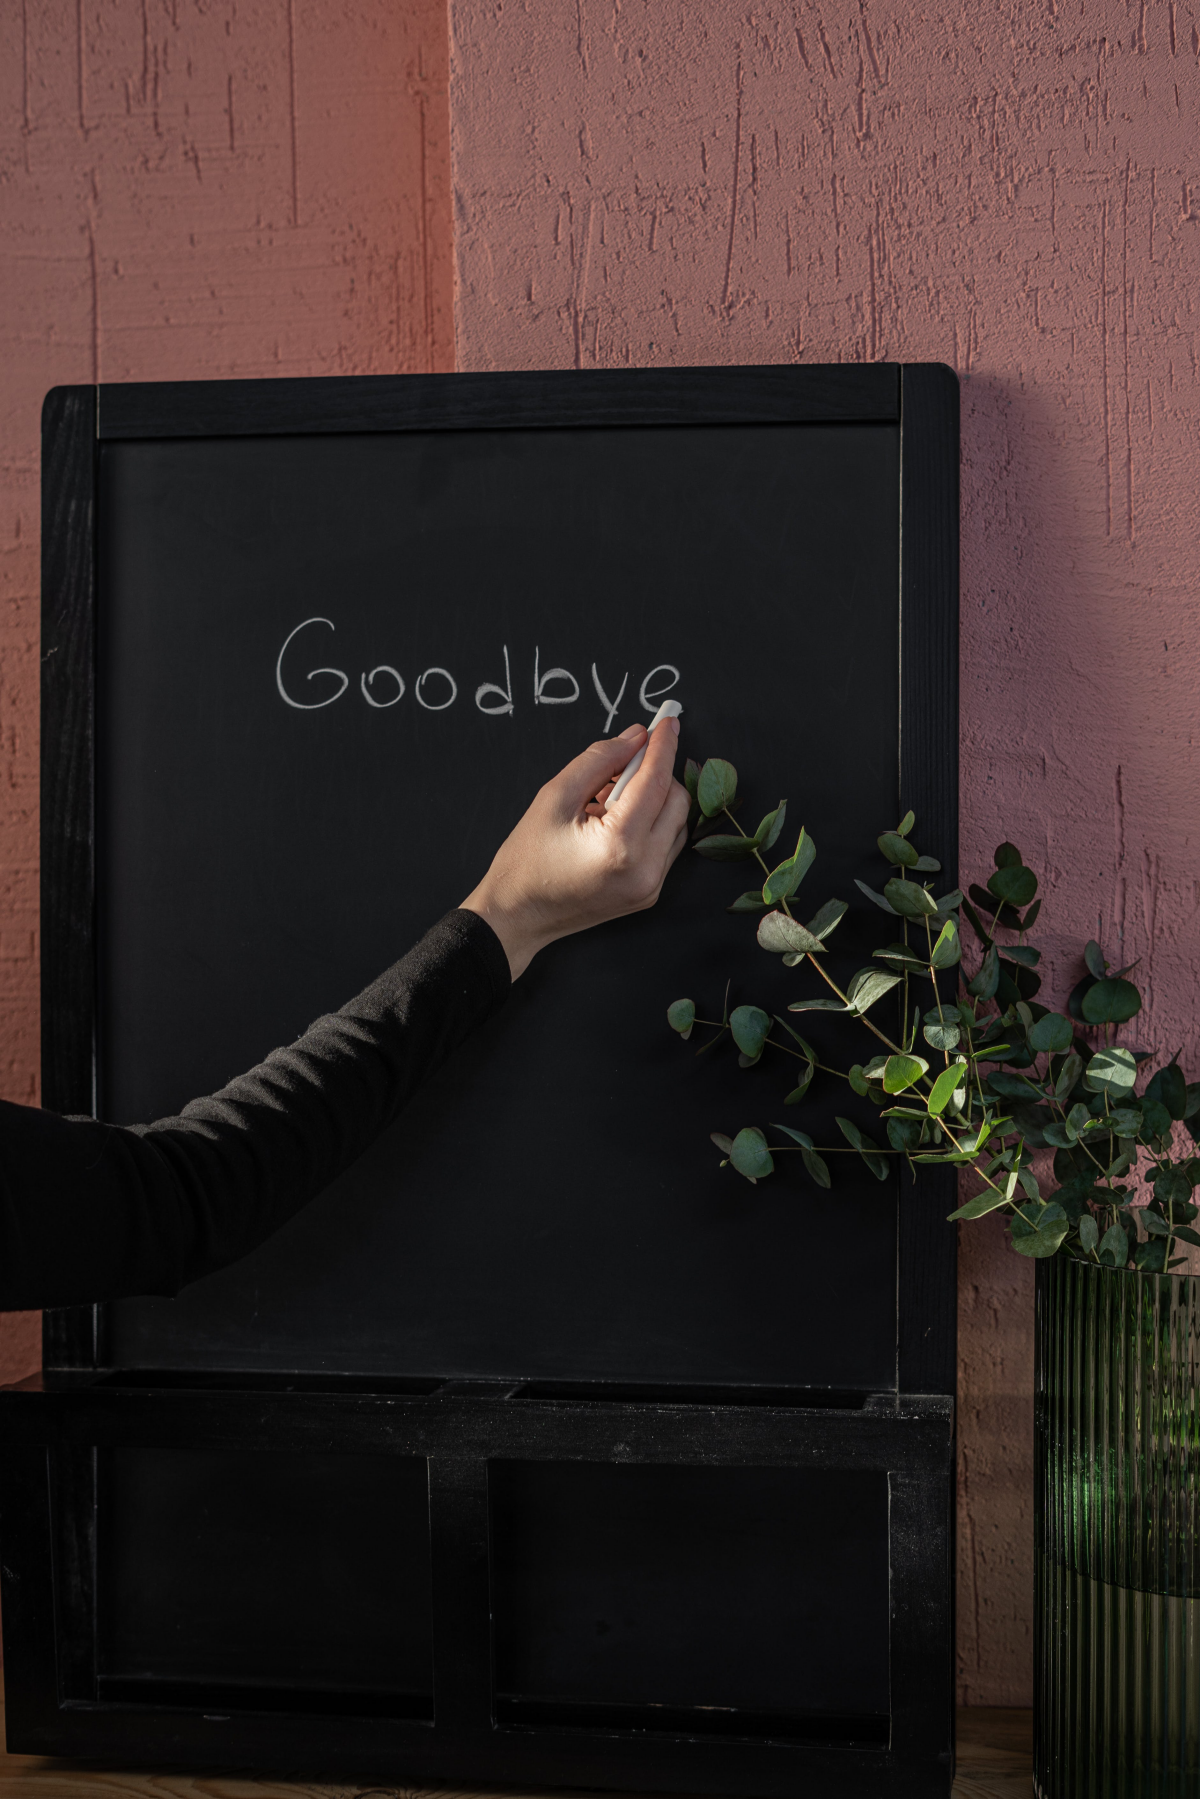 writing goodbye on chalkboard